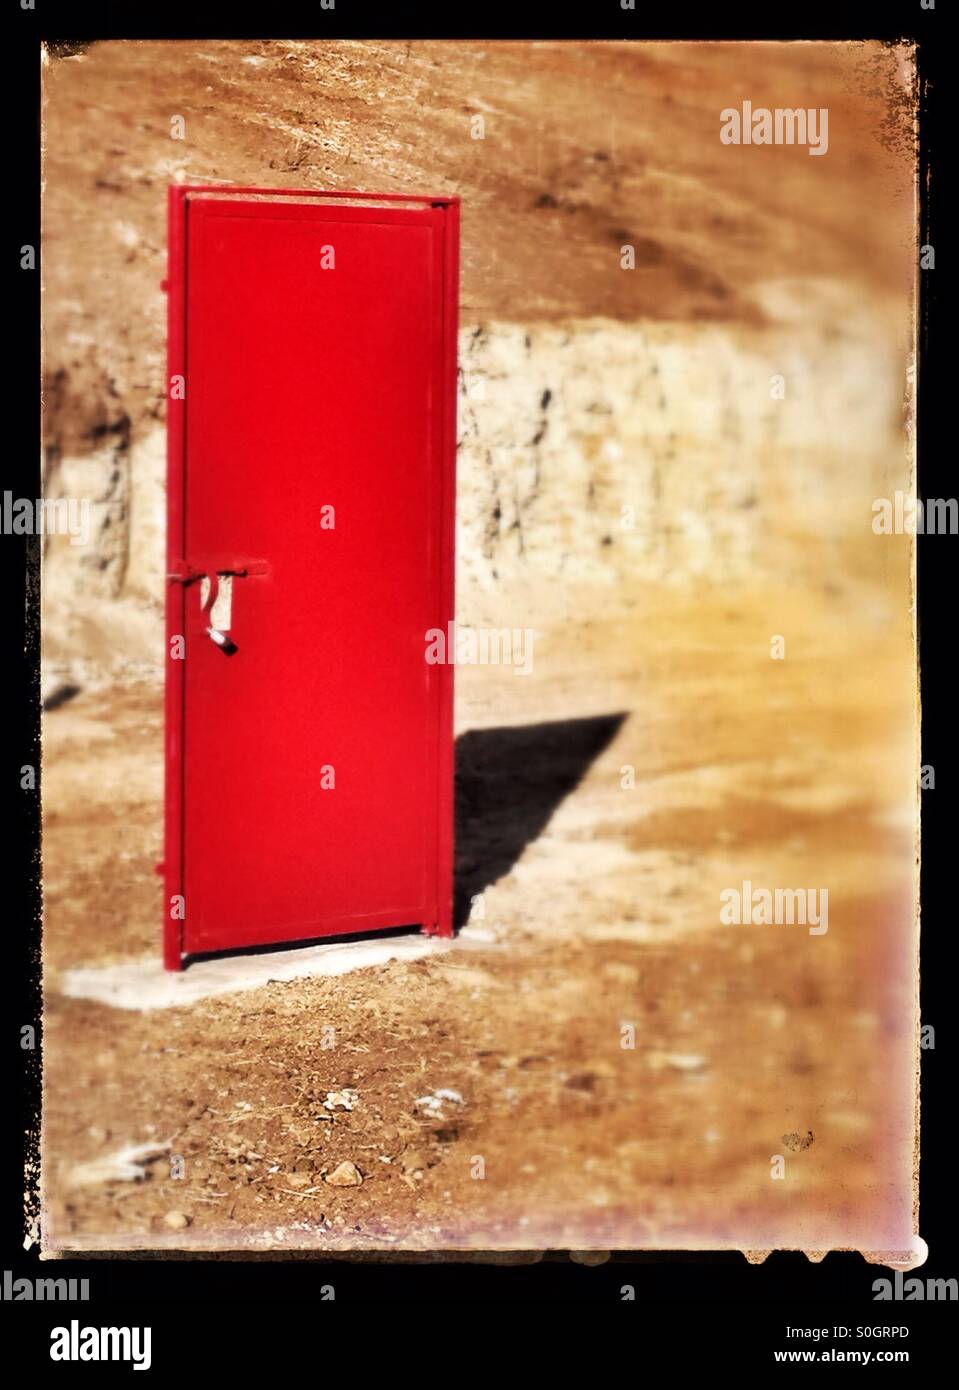 Einsame rote Tür auf freien Boden Stockfoto